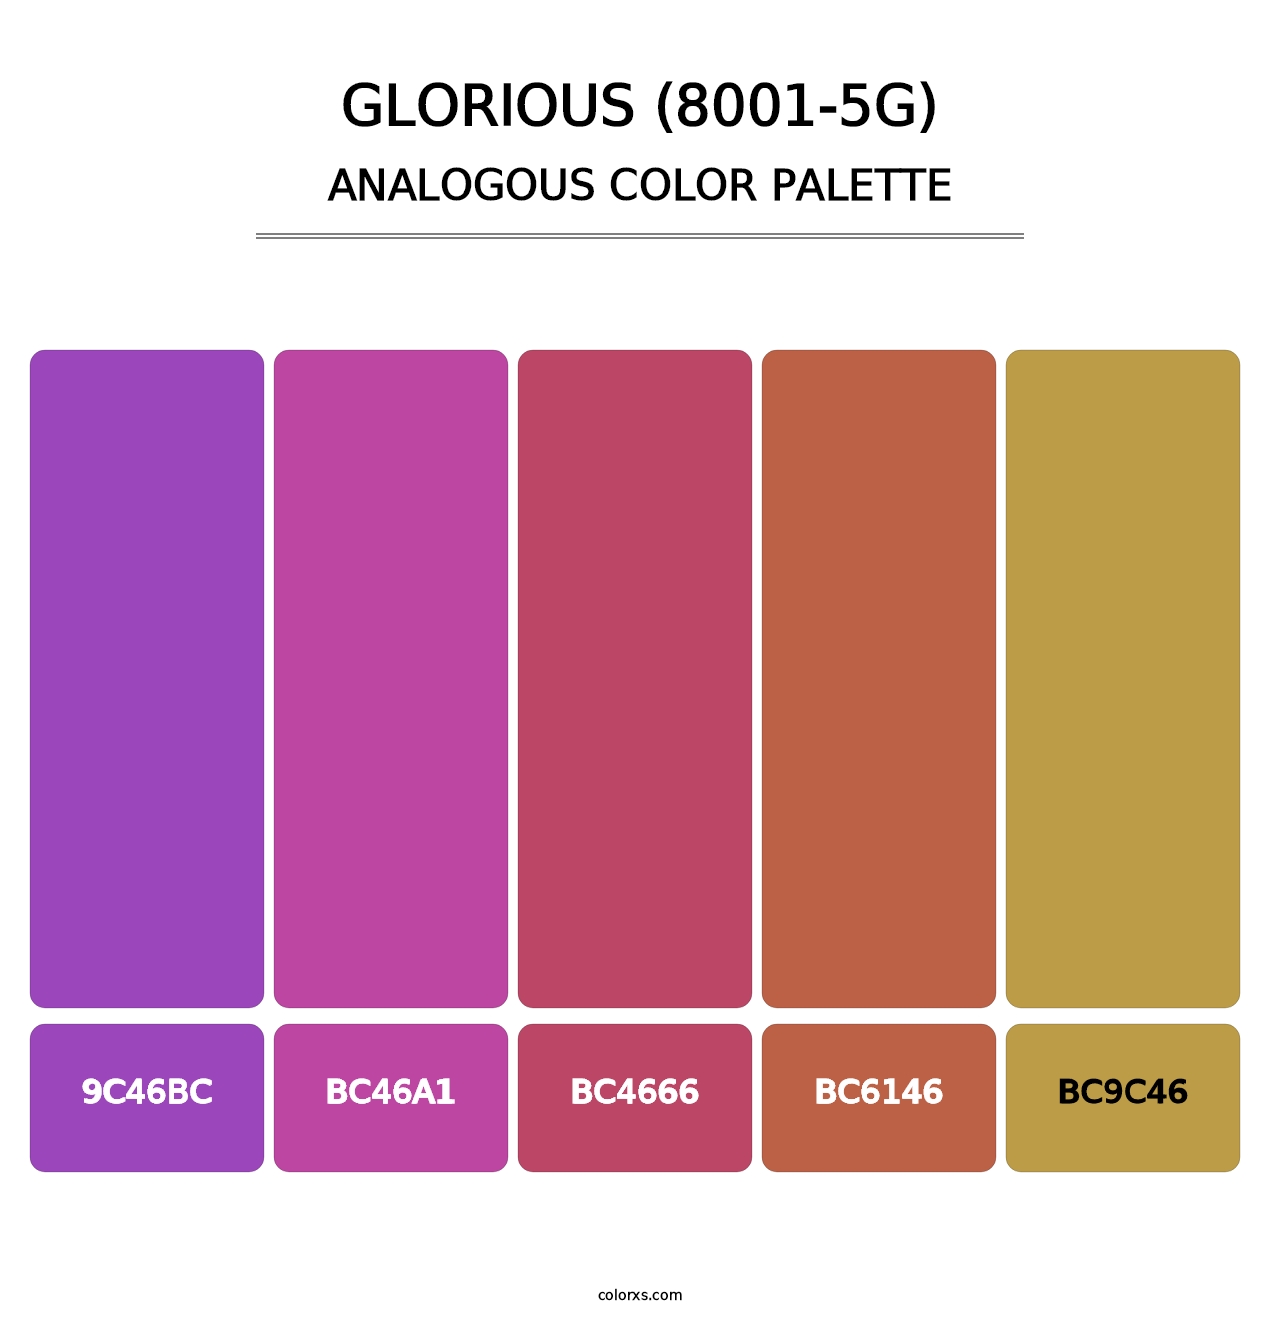 Glorious (8001-5G) - Analogous Color Palette